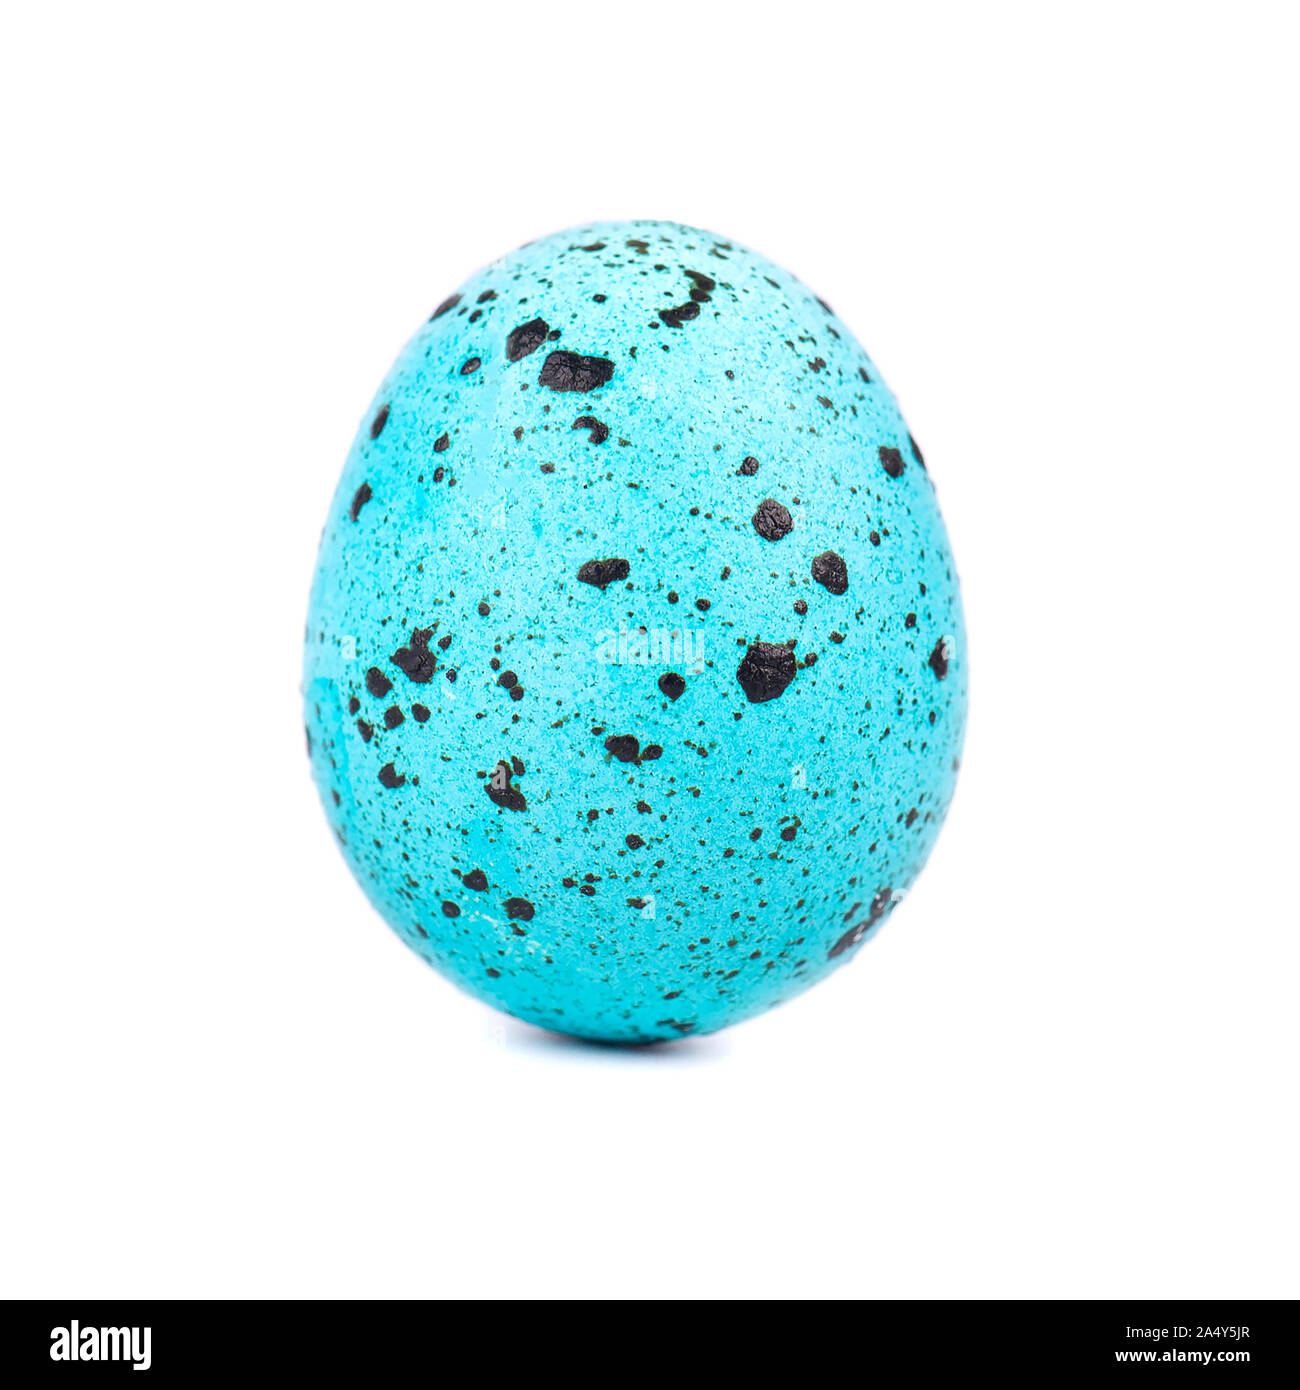 Quaglia uovo di pasqua di colore blu, isolato su sfondo bianco. Concetto di pasqua. Macro Foto Stock